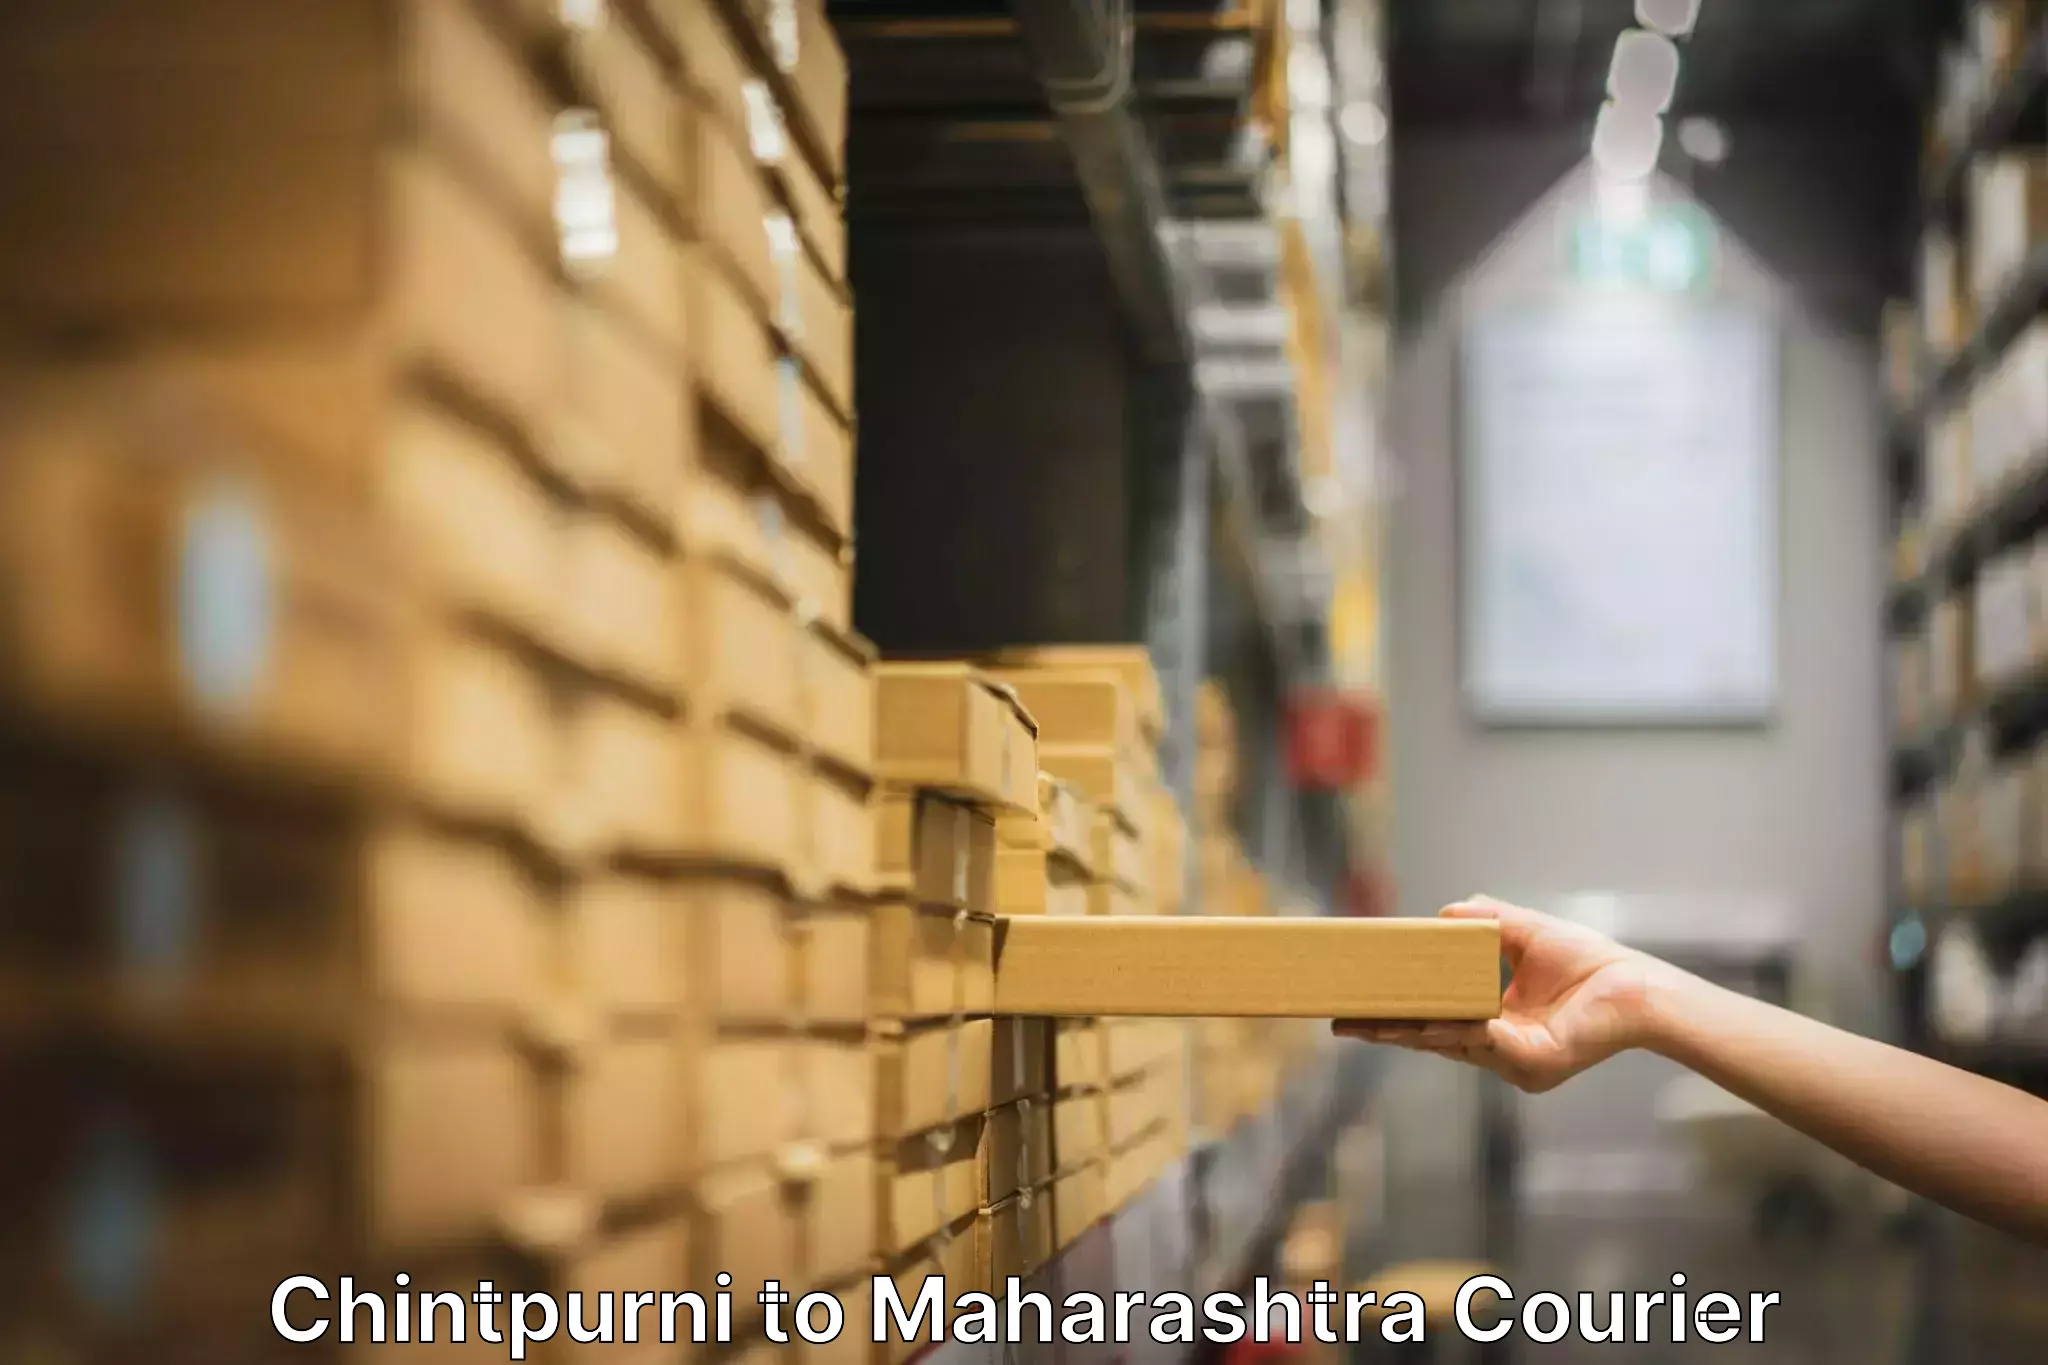 Furniture moving plans Chintpurni to Rajapur